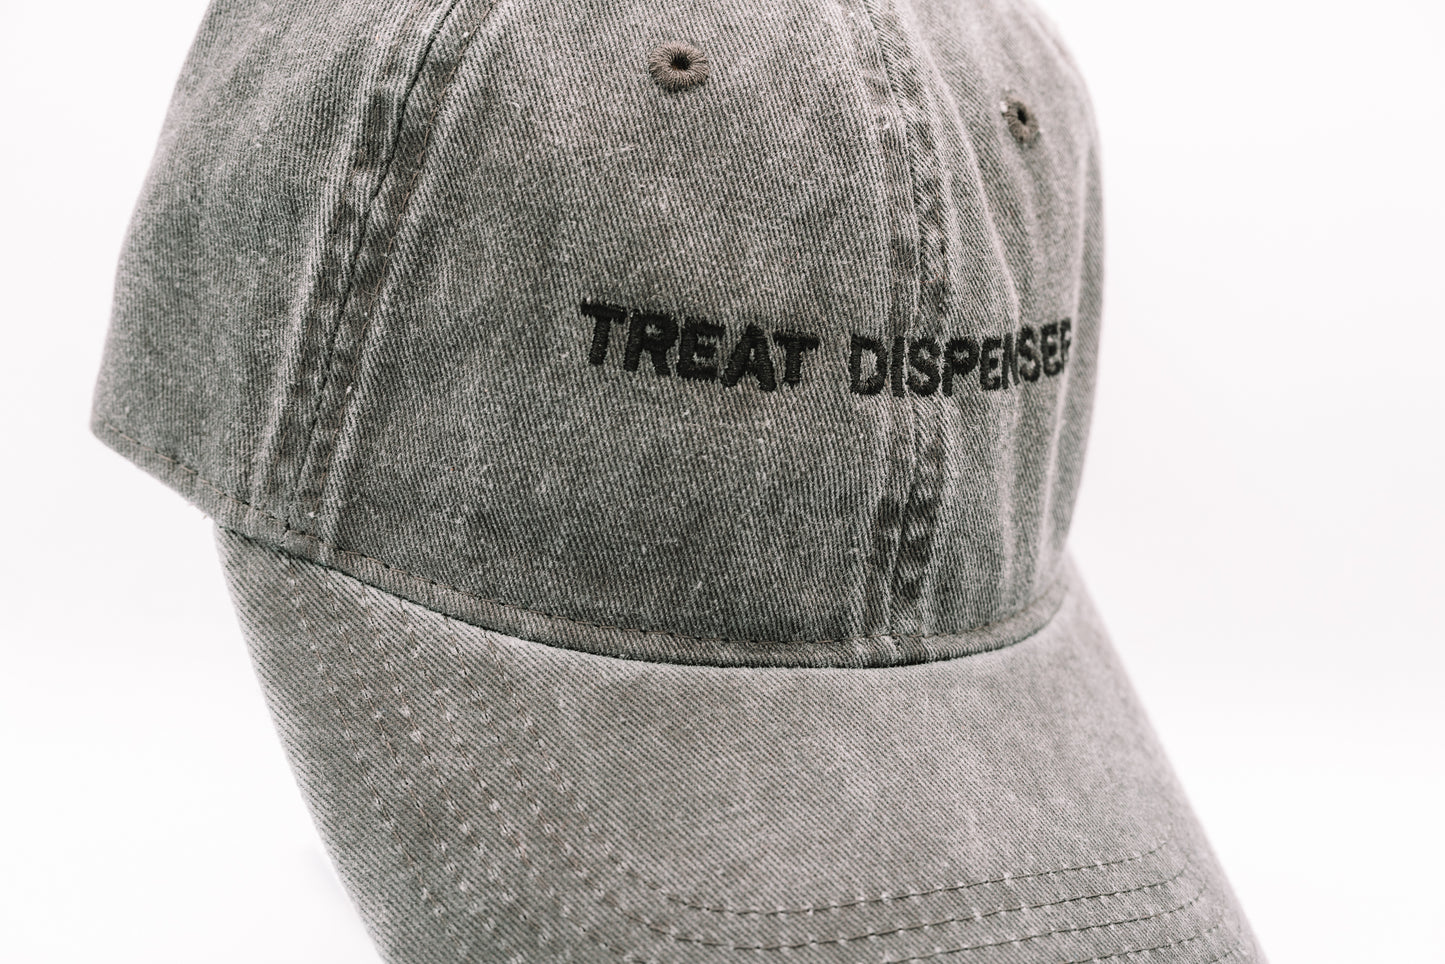 Treat Dispenser Embroidered Cap - Black